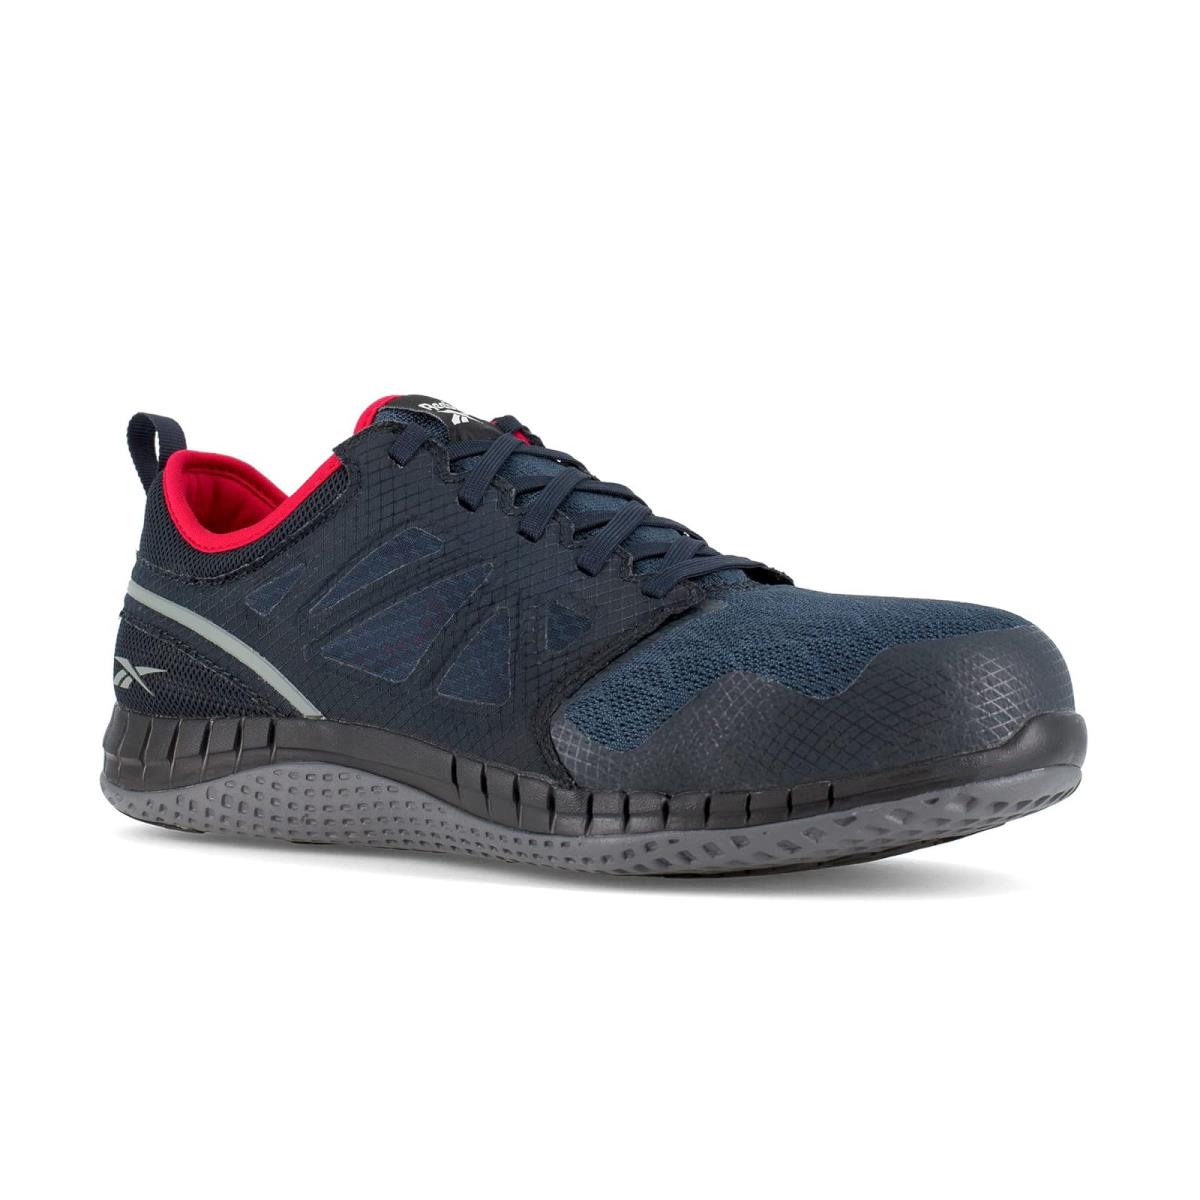 Man`s Sneakers Athletic Shoes Reebok Work Zprint Work Navy/Red/Grey